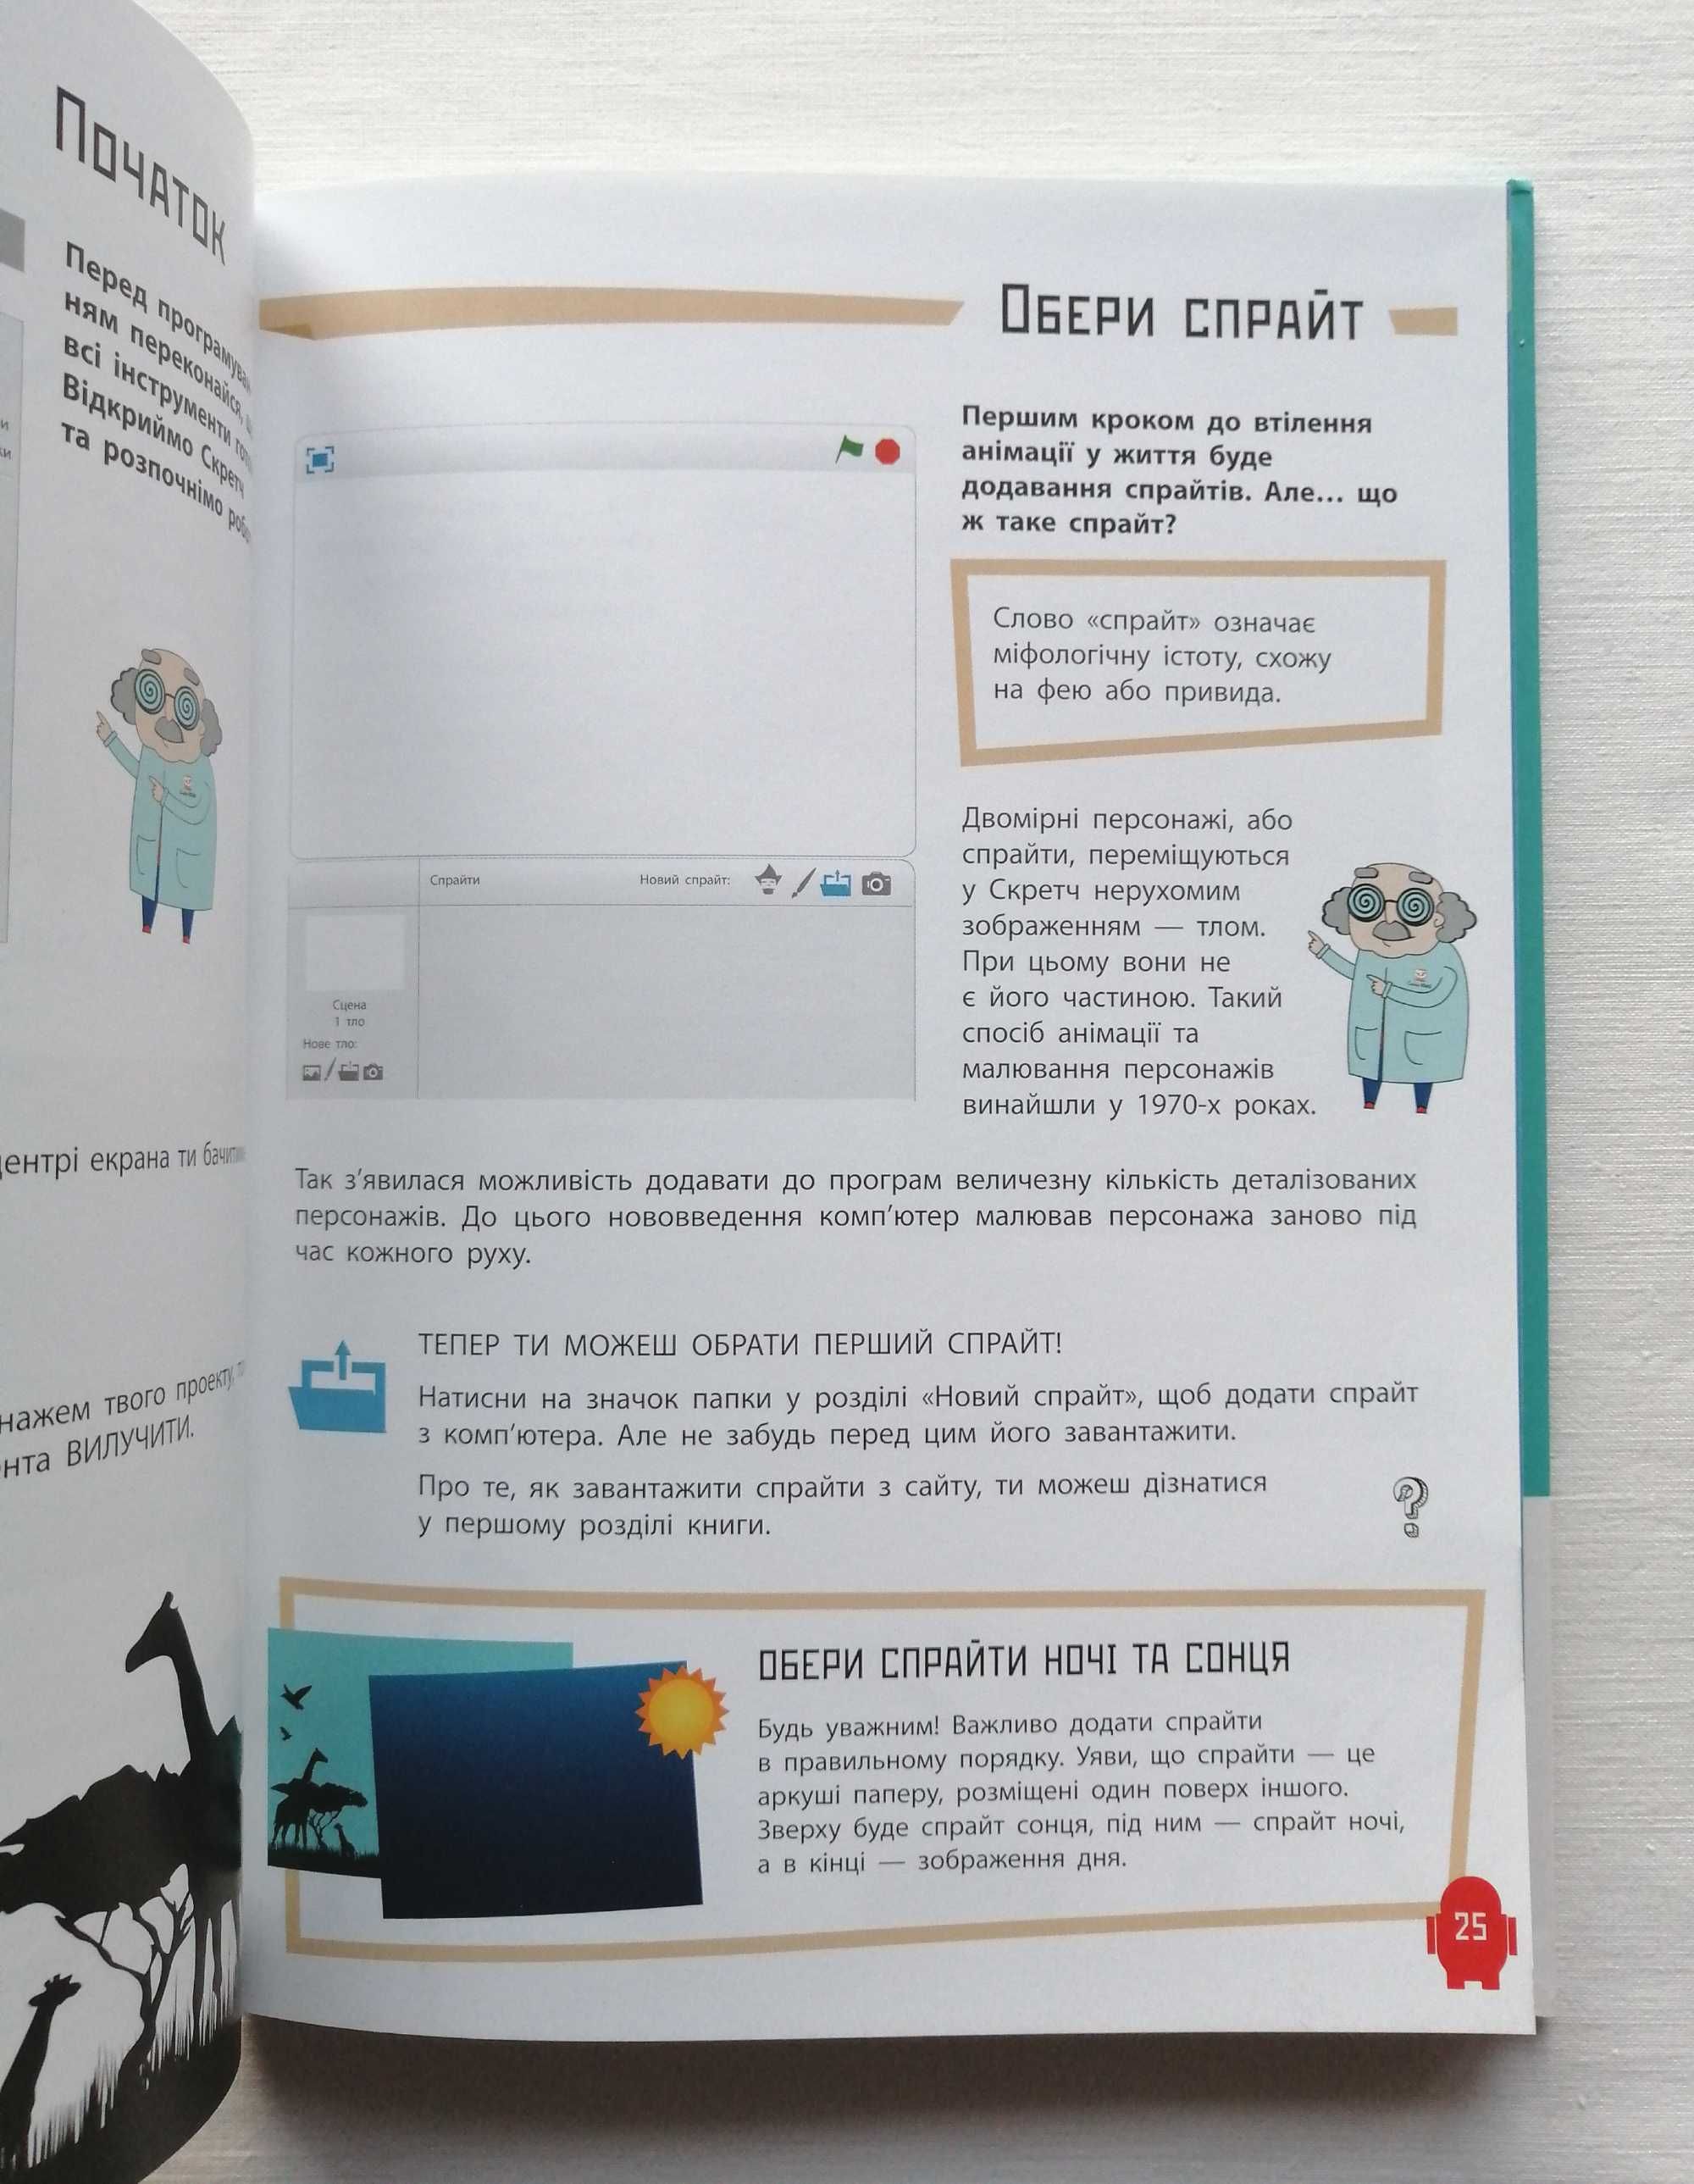 Книга "Програмування для дітей. Анімації" Видавництво Ранок - НОВА